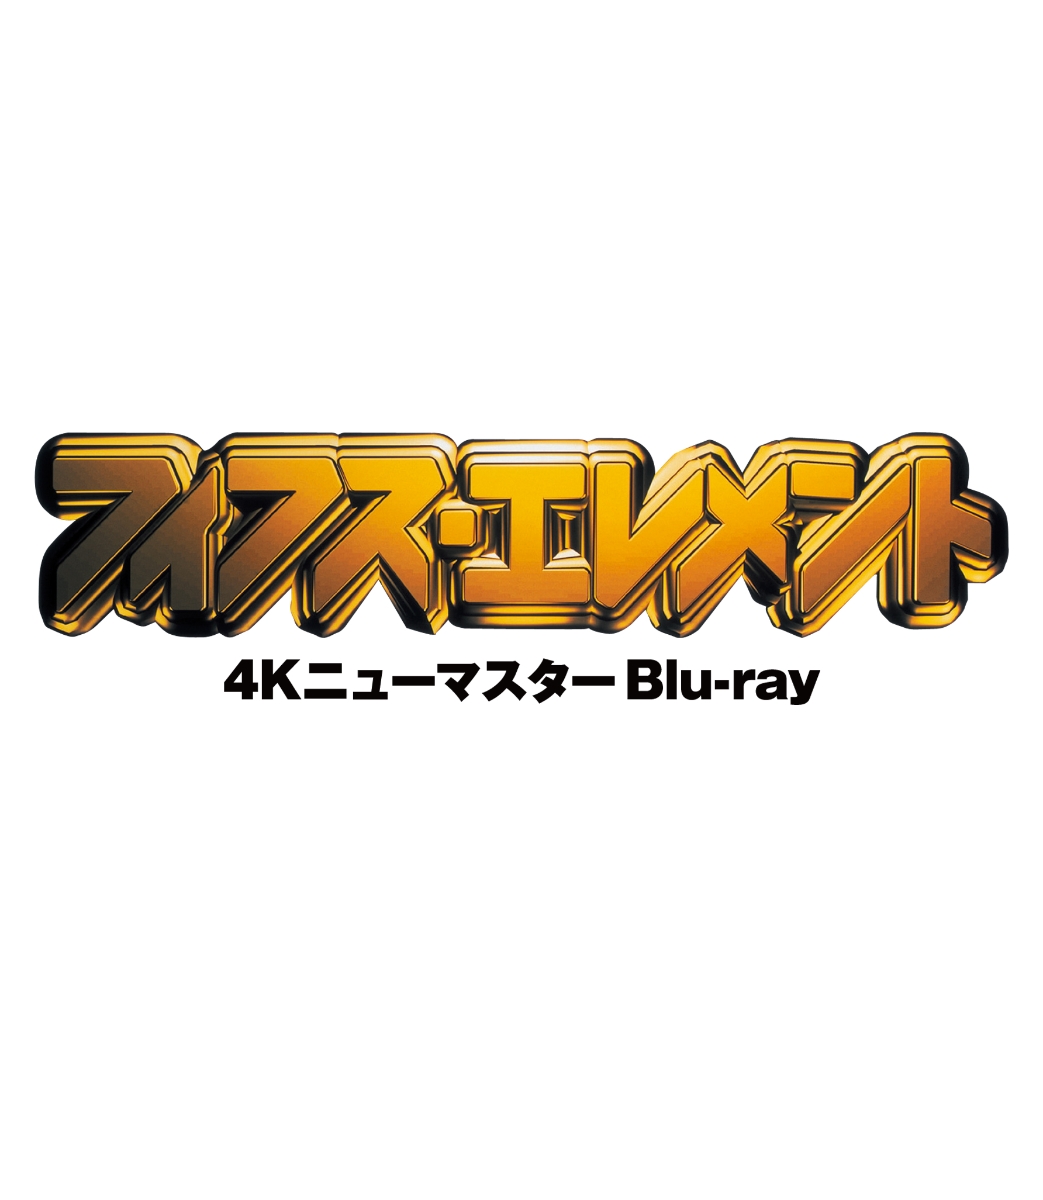 フィフス・エレメント4Kニューマスター【Blu-ray】[ブルース・ウィリス]